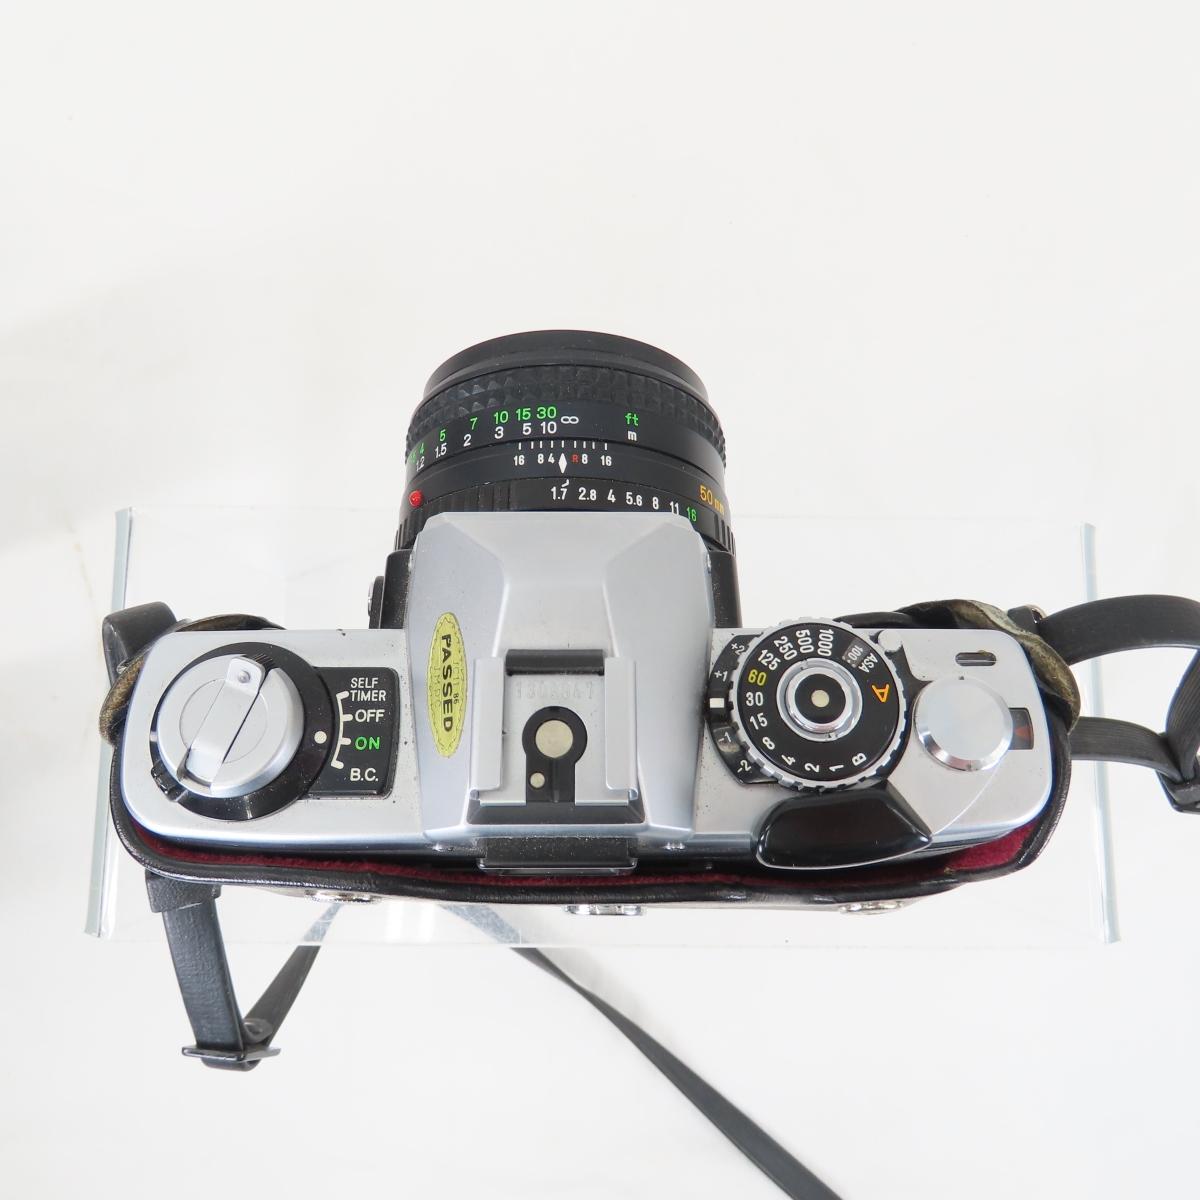 Minolta XG-7 XG-SE & Hi-Matic AF2 35mm Cameras